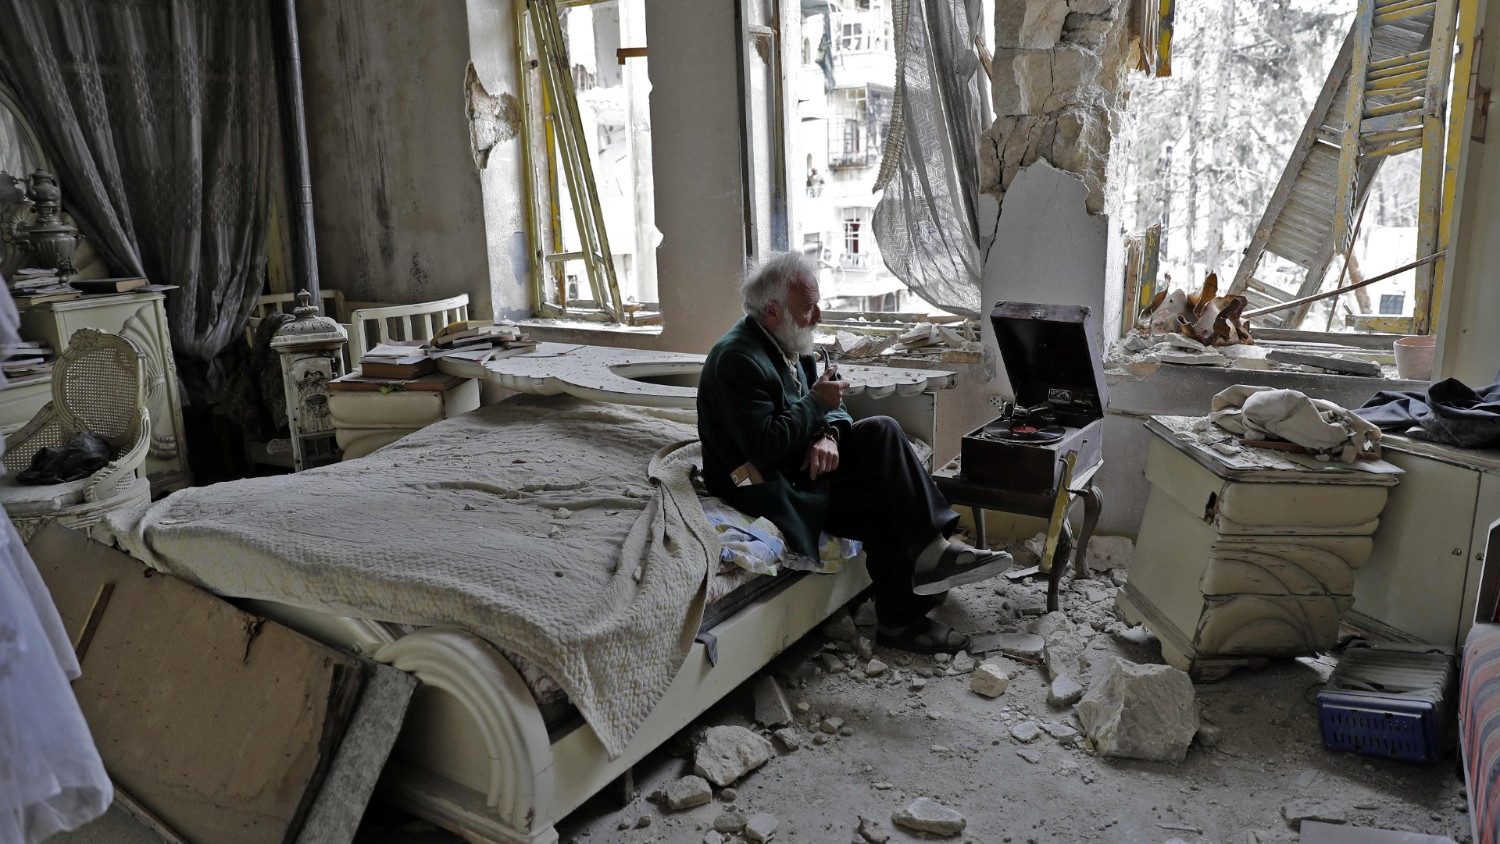 Harapan sekarat di Suriah saat dunia melupakan penderitaan kita